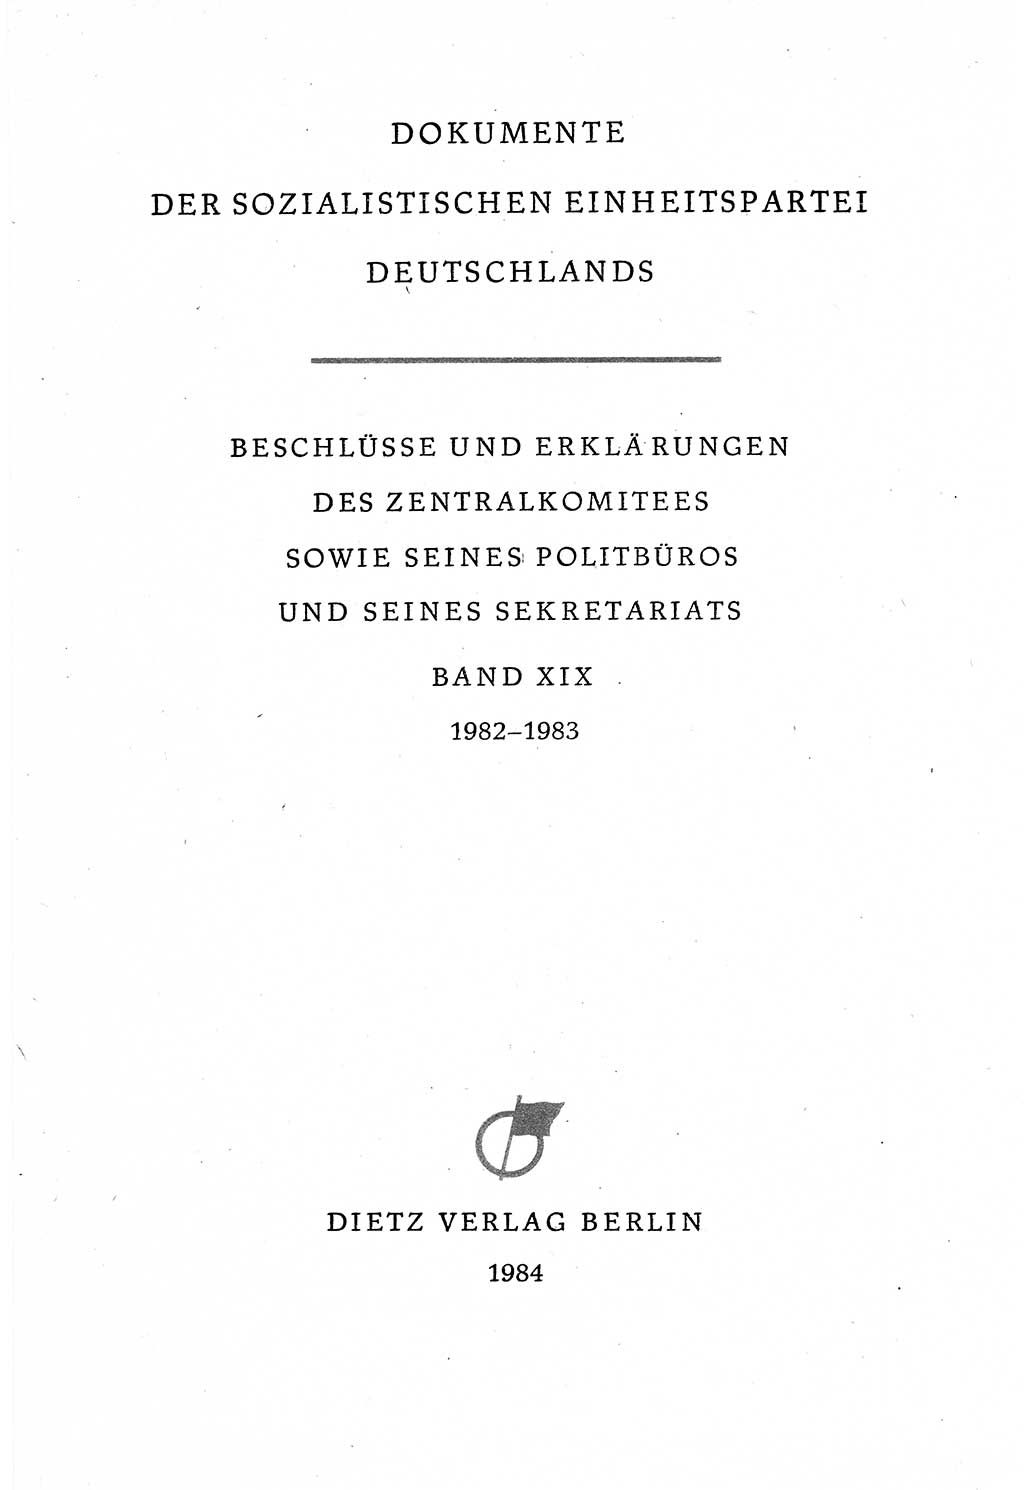 Dokumente der Sozialistischen Einheitspartei Deutschlands (SED) [Deutsche Demokratische Republik (DDR)] 1982-1983, Seite 3 (Dok. SED DDR 1982-1983, S. 3)